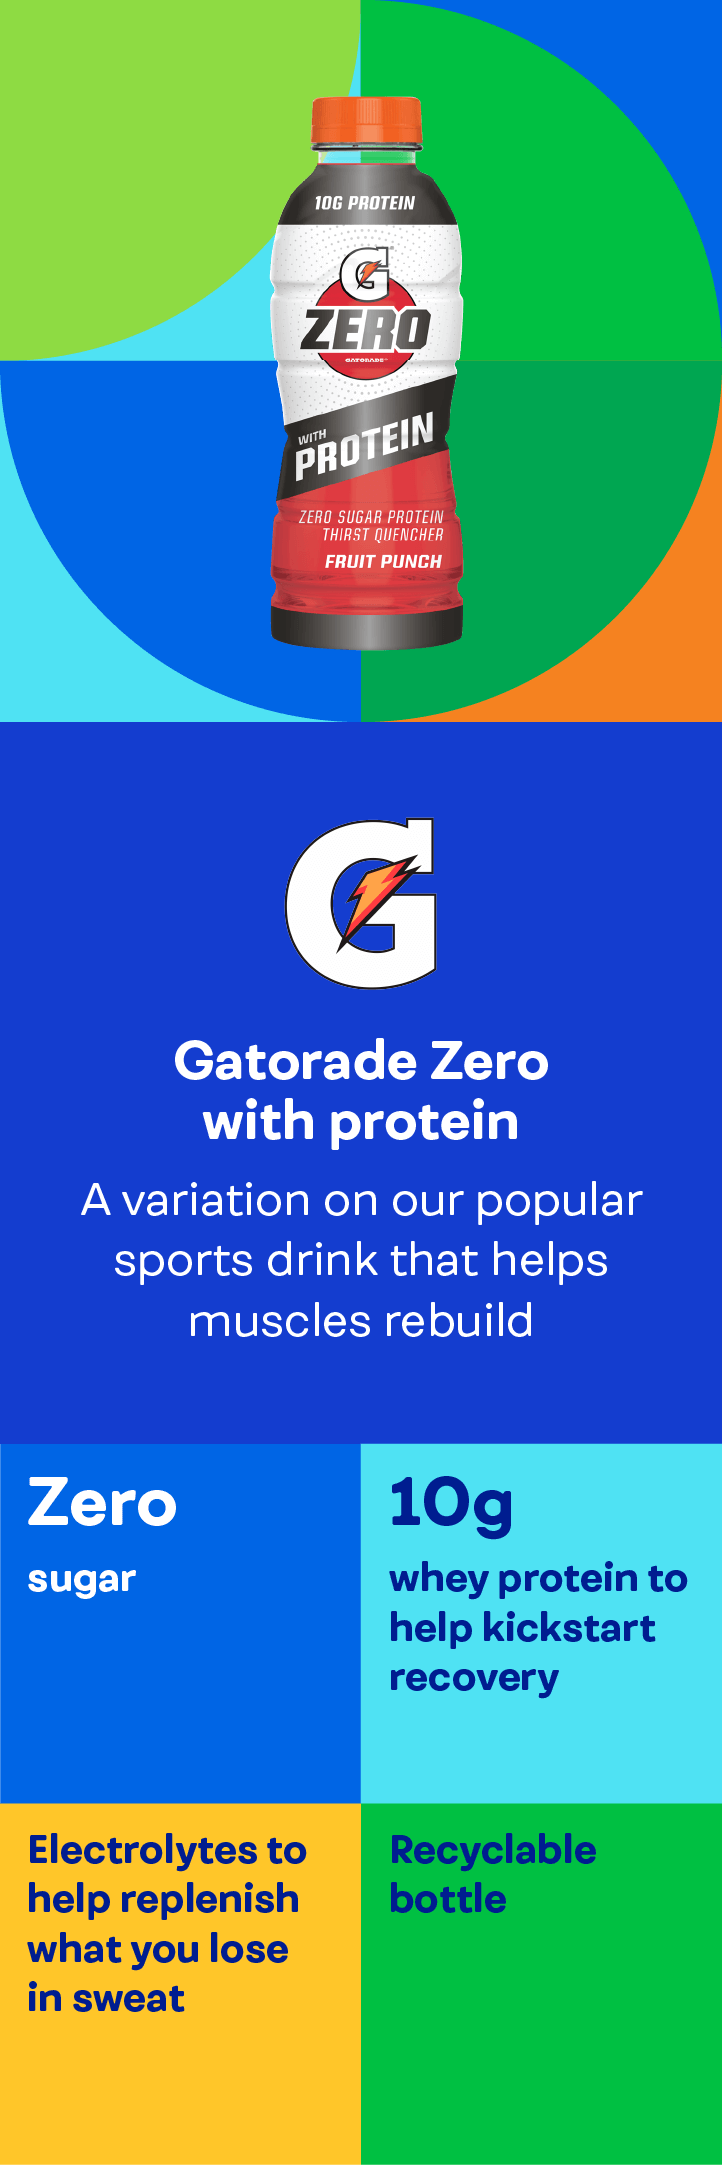 Gatorade Zero with protein. Zero sugar, 10g whey protein, electrolytes. Recyclable bottle.